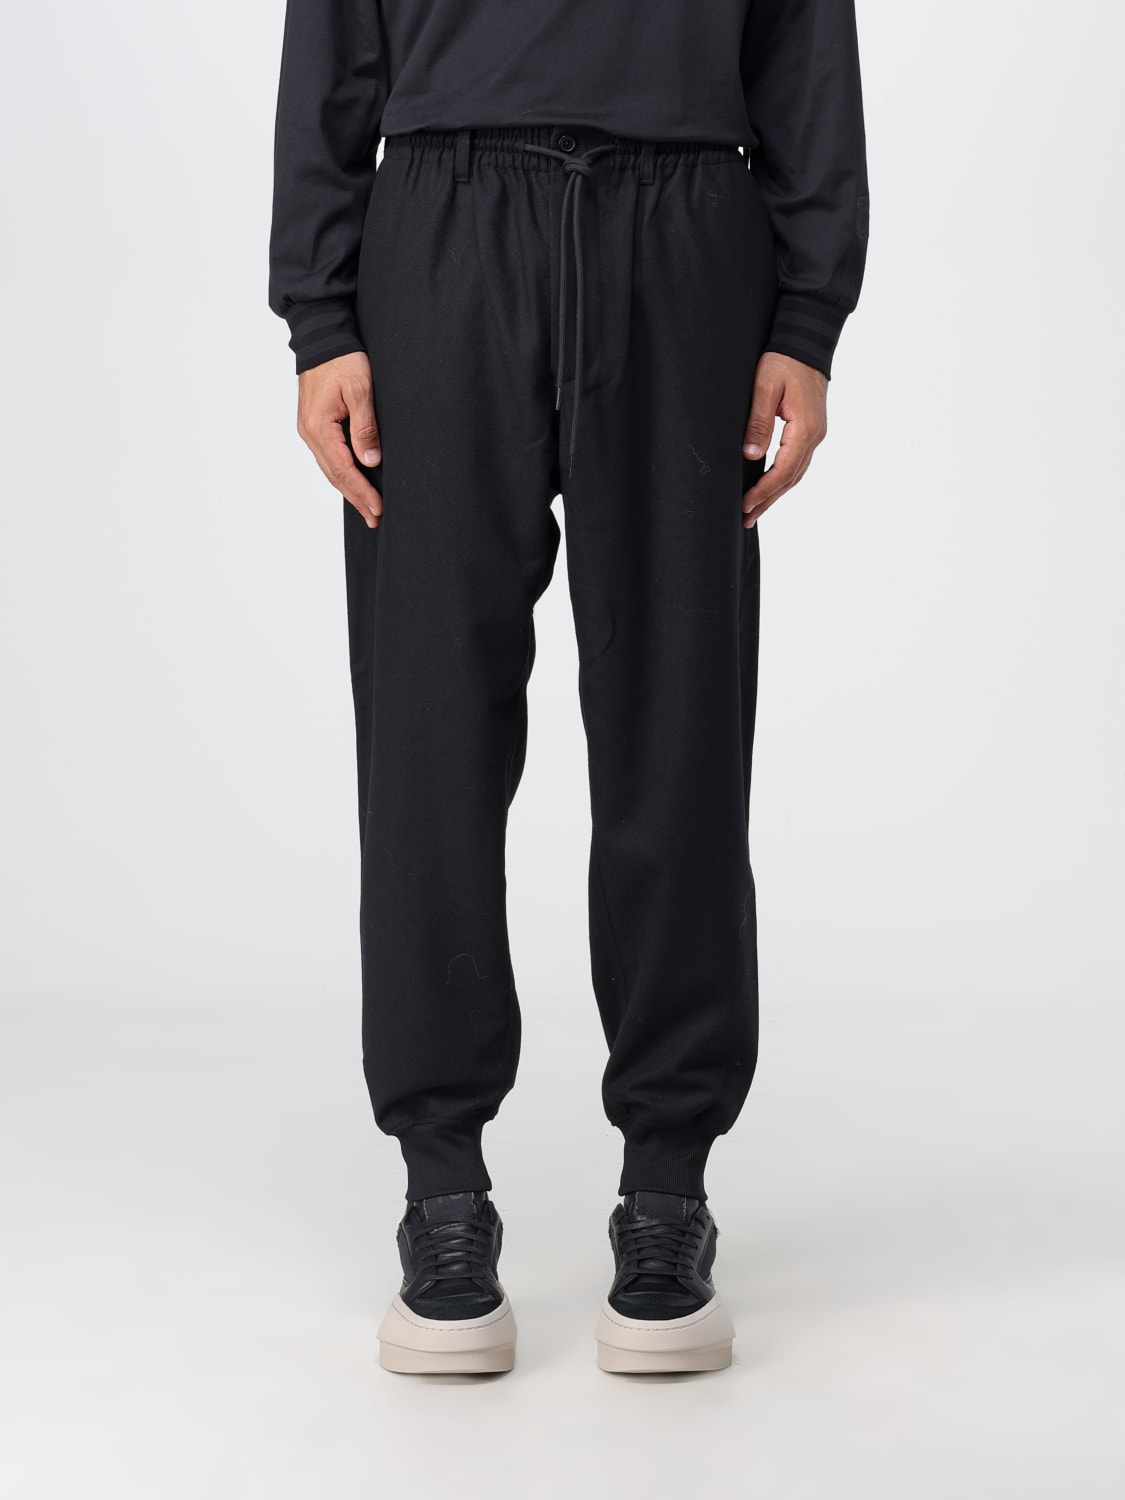 Y-3: Pants men - Black  Y-3 pants IL2148 online at